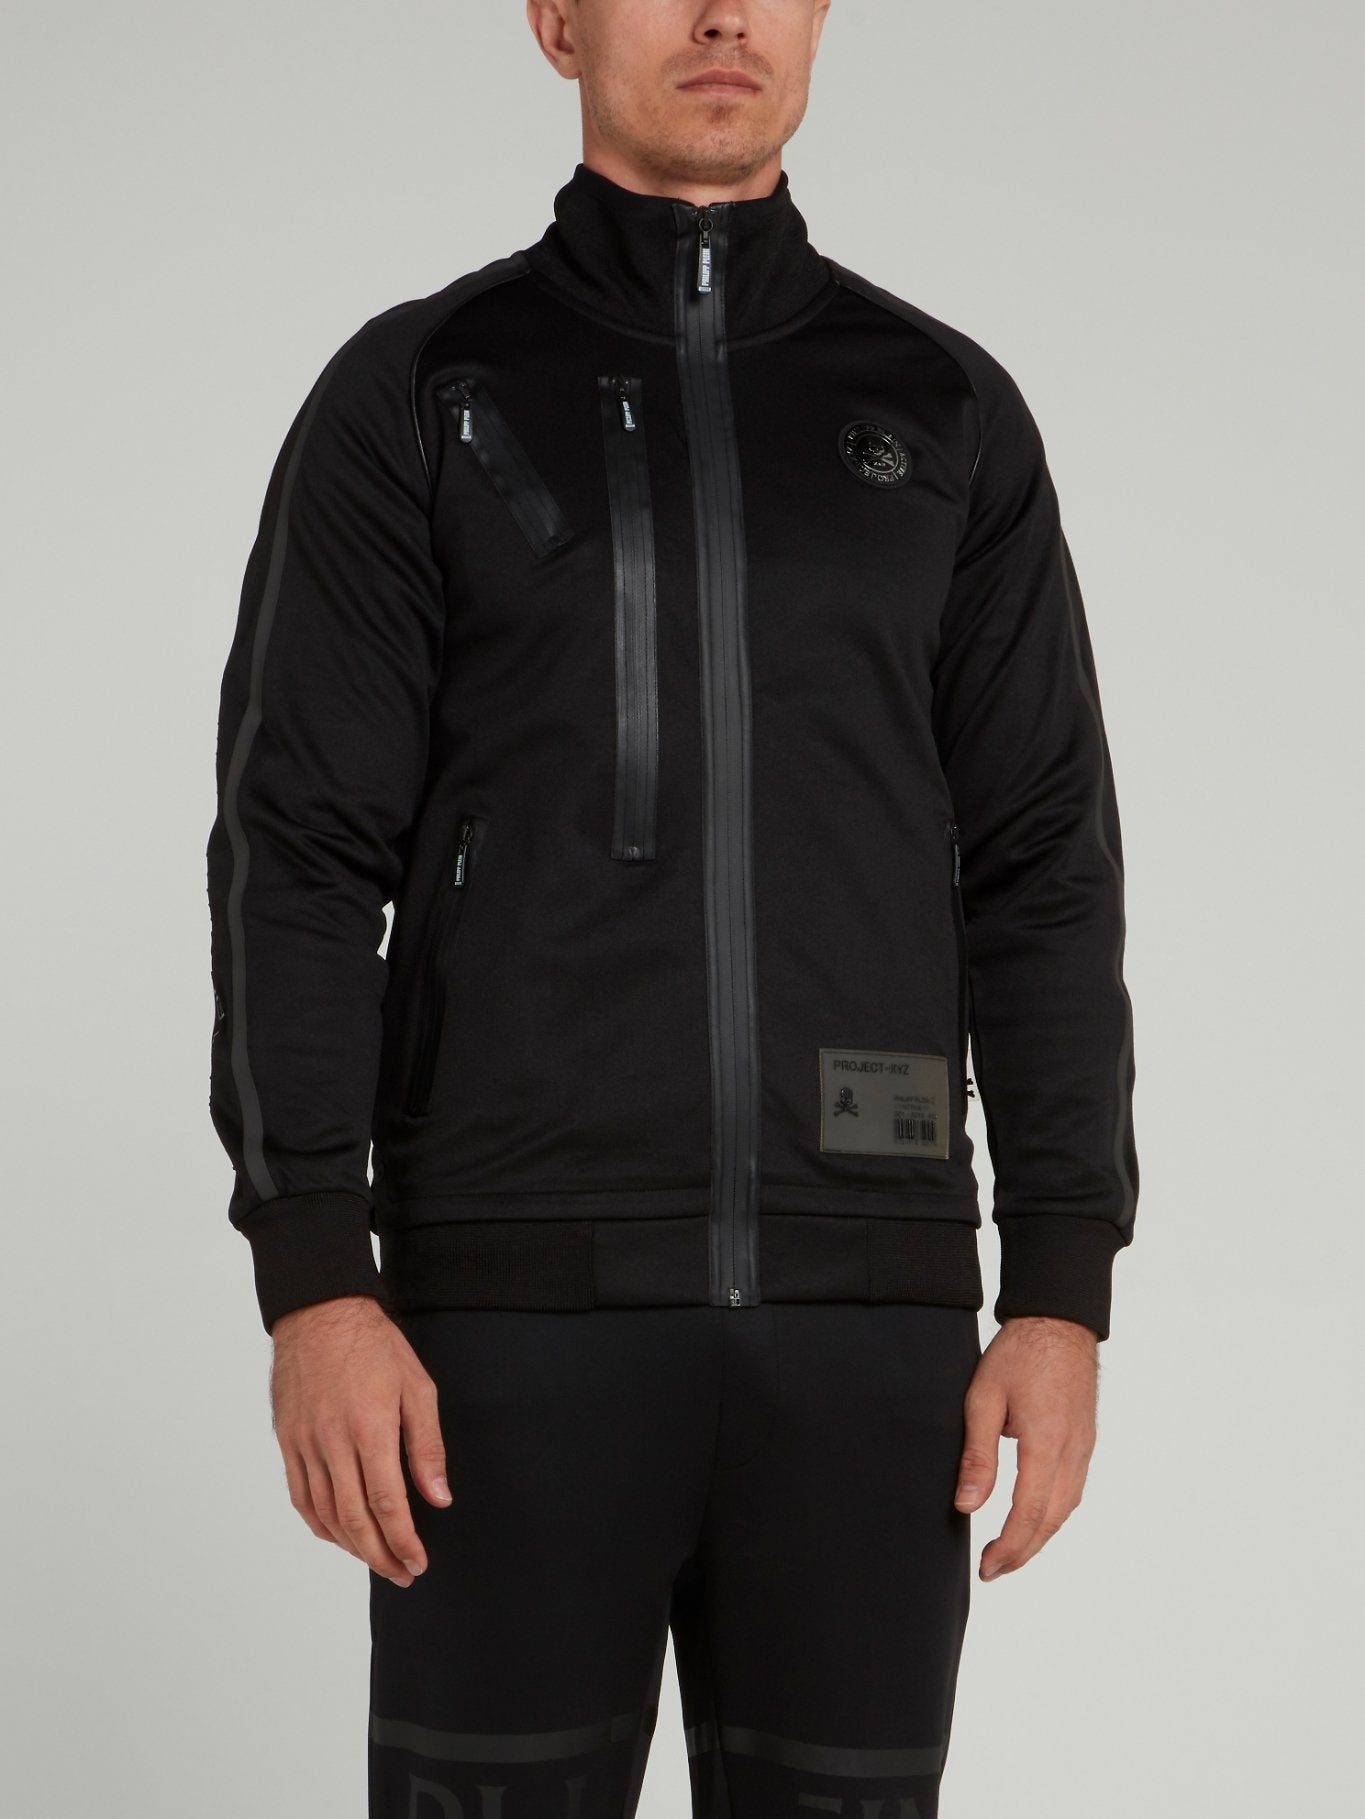 Black Zipper Embellished Jogging Jacket